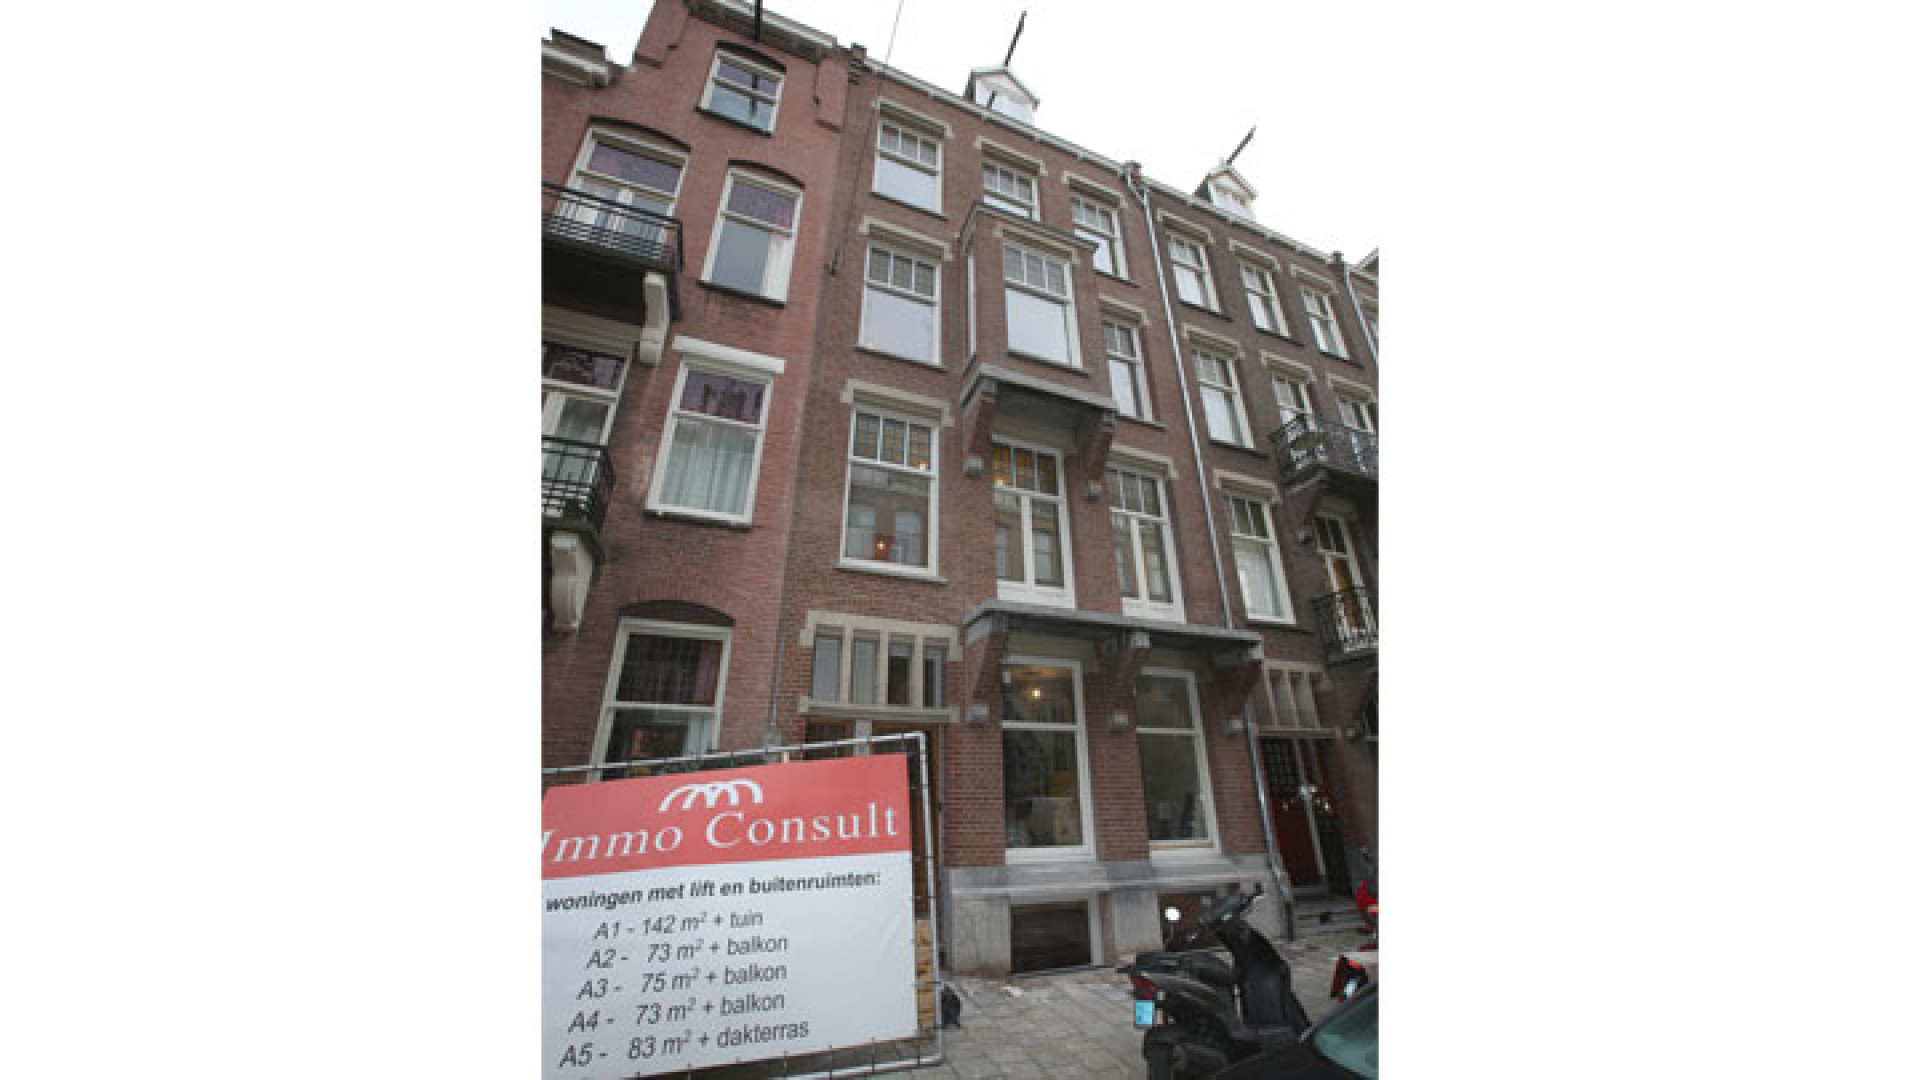 Doutzen Kroes koopt schitterend pand in Amsterdam Oud Zuid. Zie exclusieve foto's 9